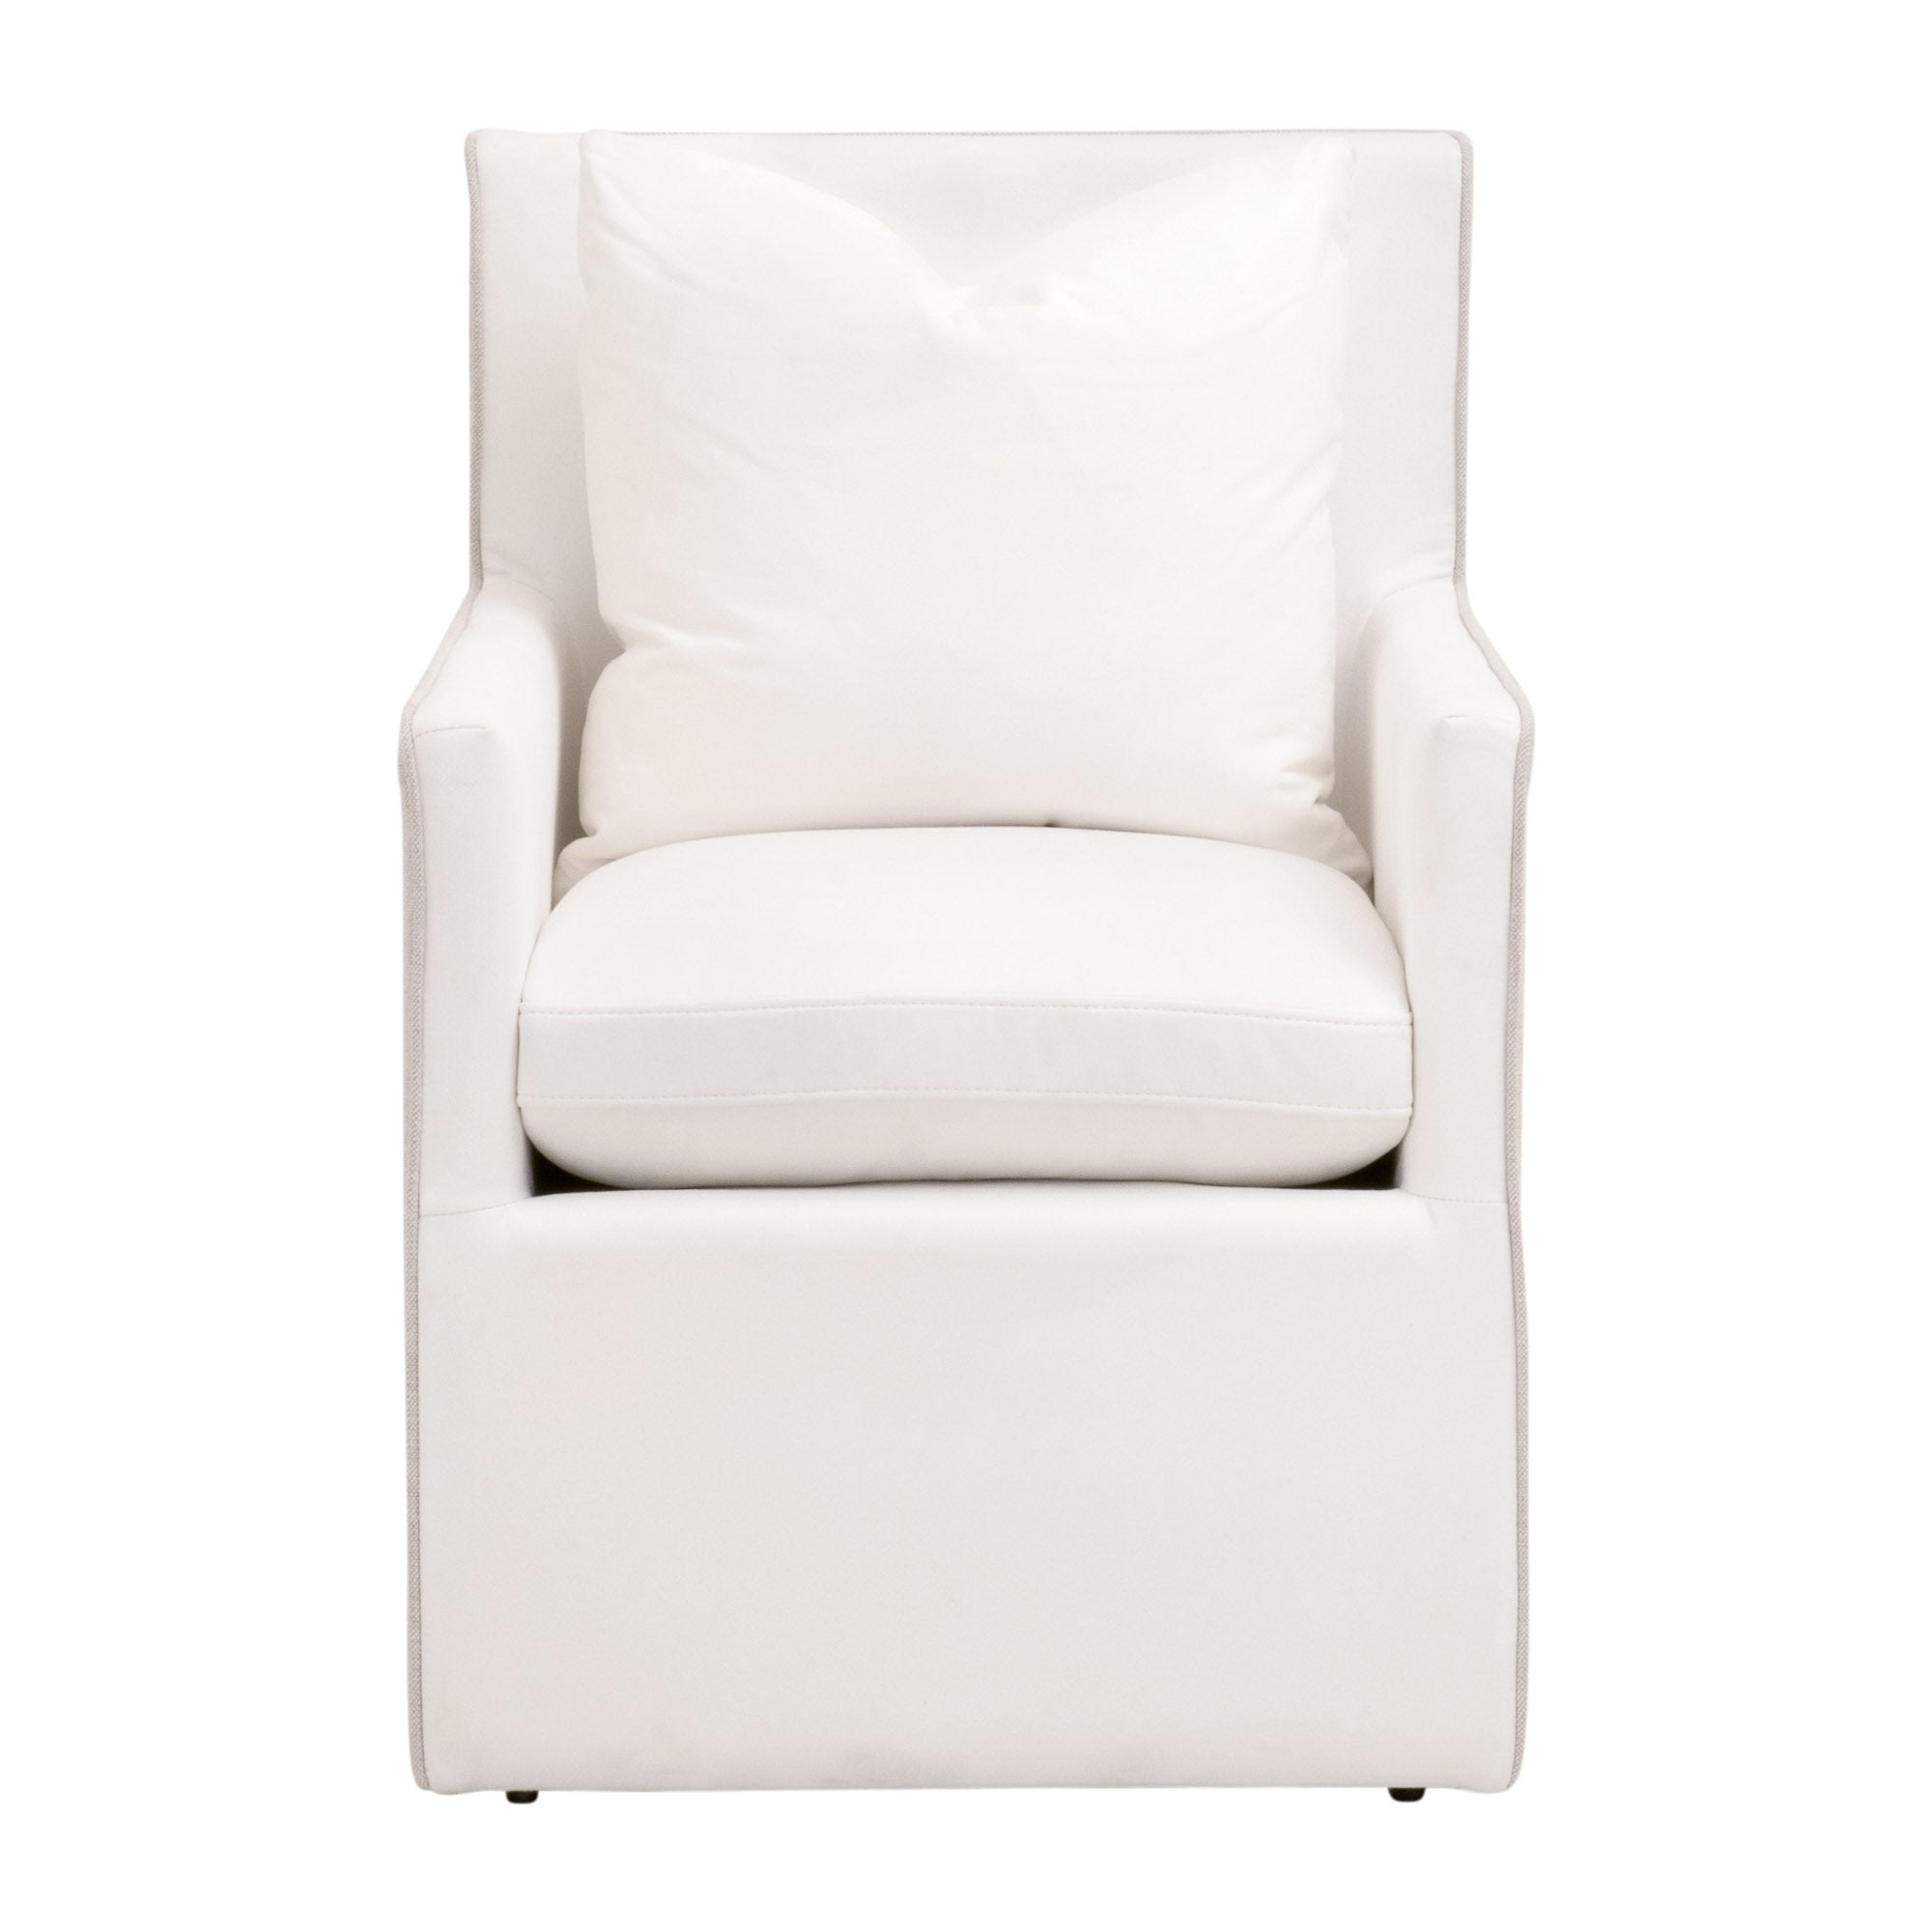 Apecchio Chair